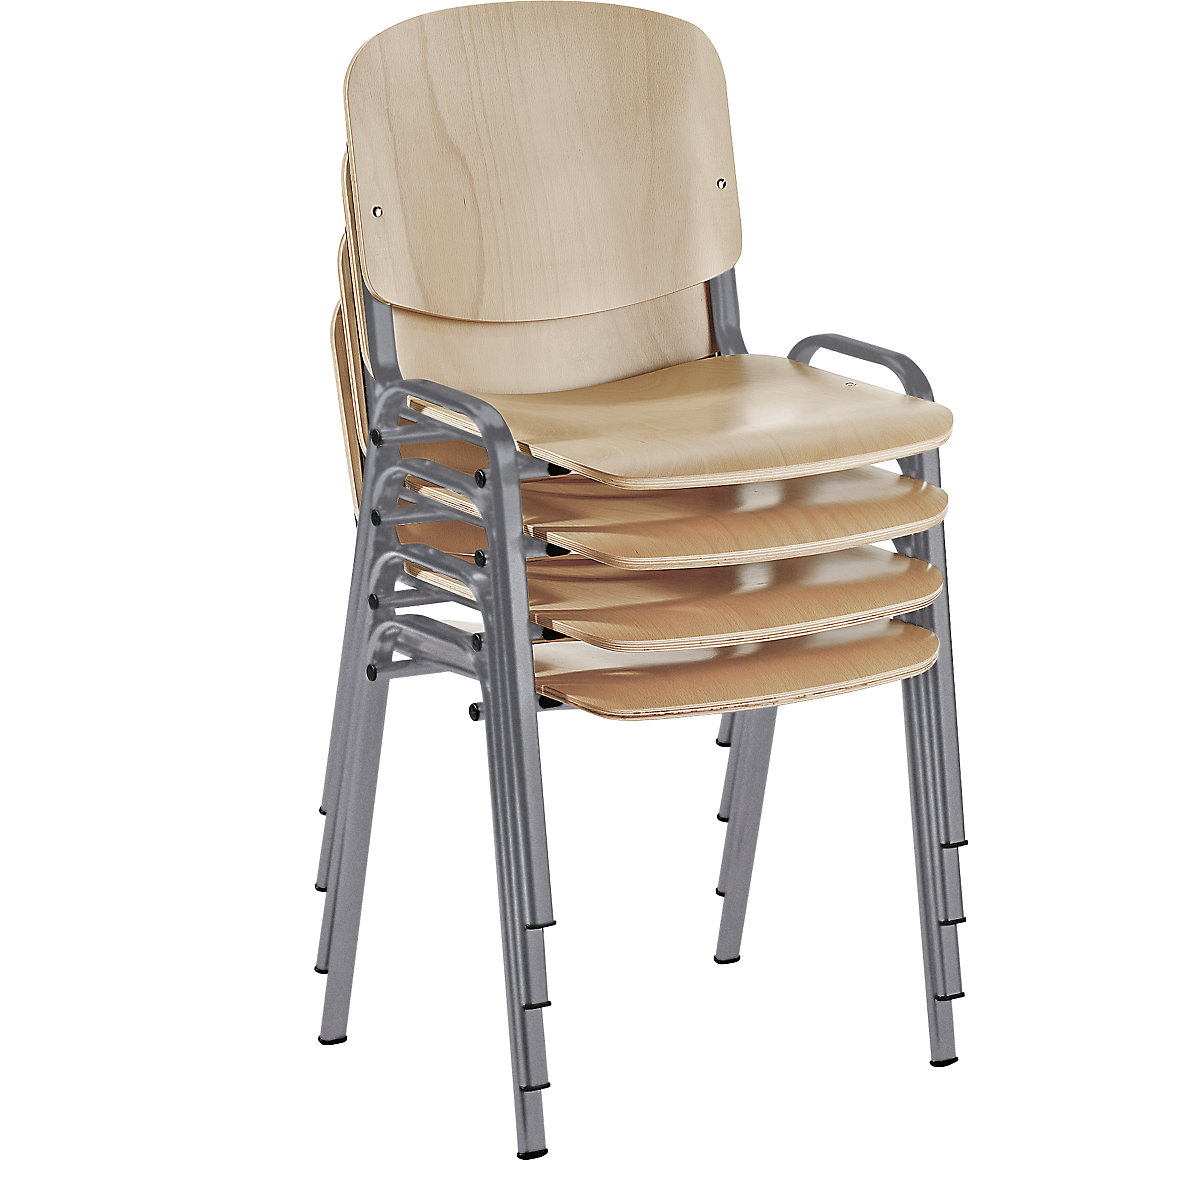 Stolica za slaganje, ergonomski oblikovana